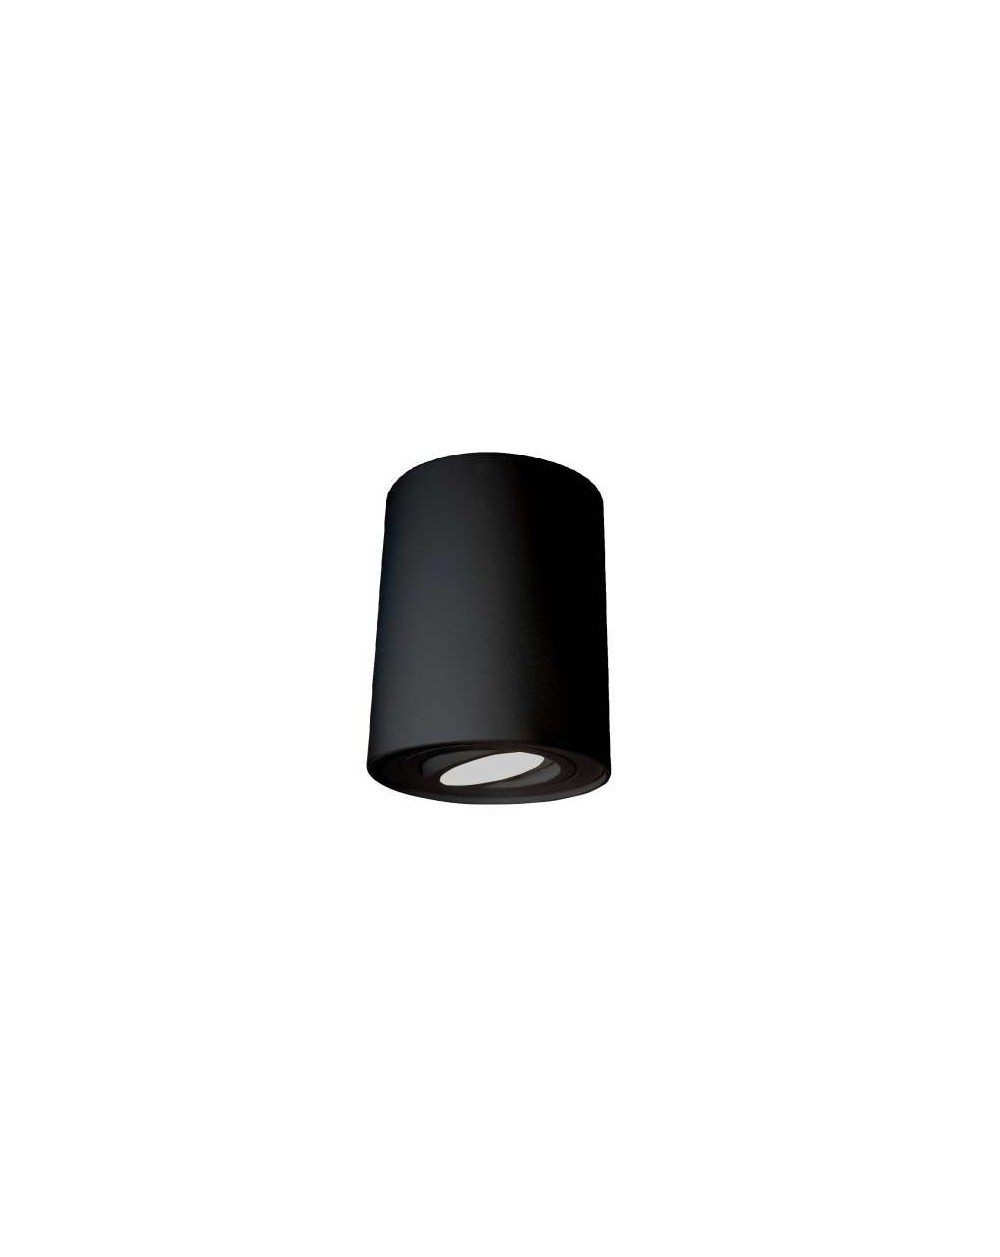 Natynkowa lampa sufitowa ECOTUBE NT - Mistic oprawa okrągła czarny mat wysokość 112 mm z regulacją źródła światła  